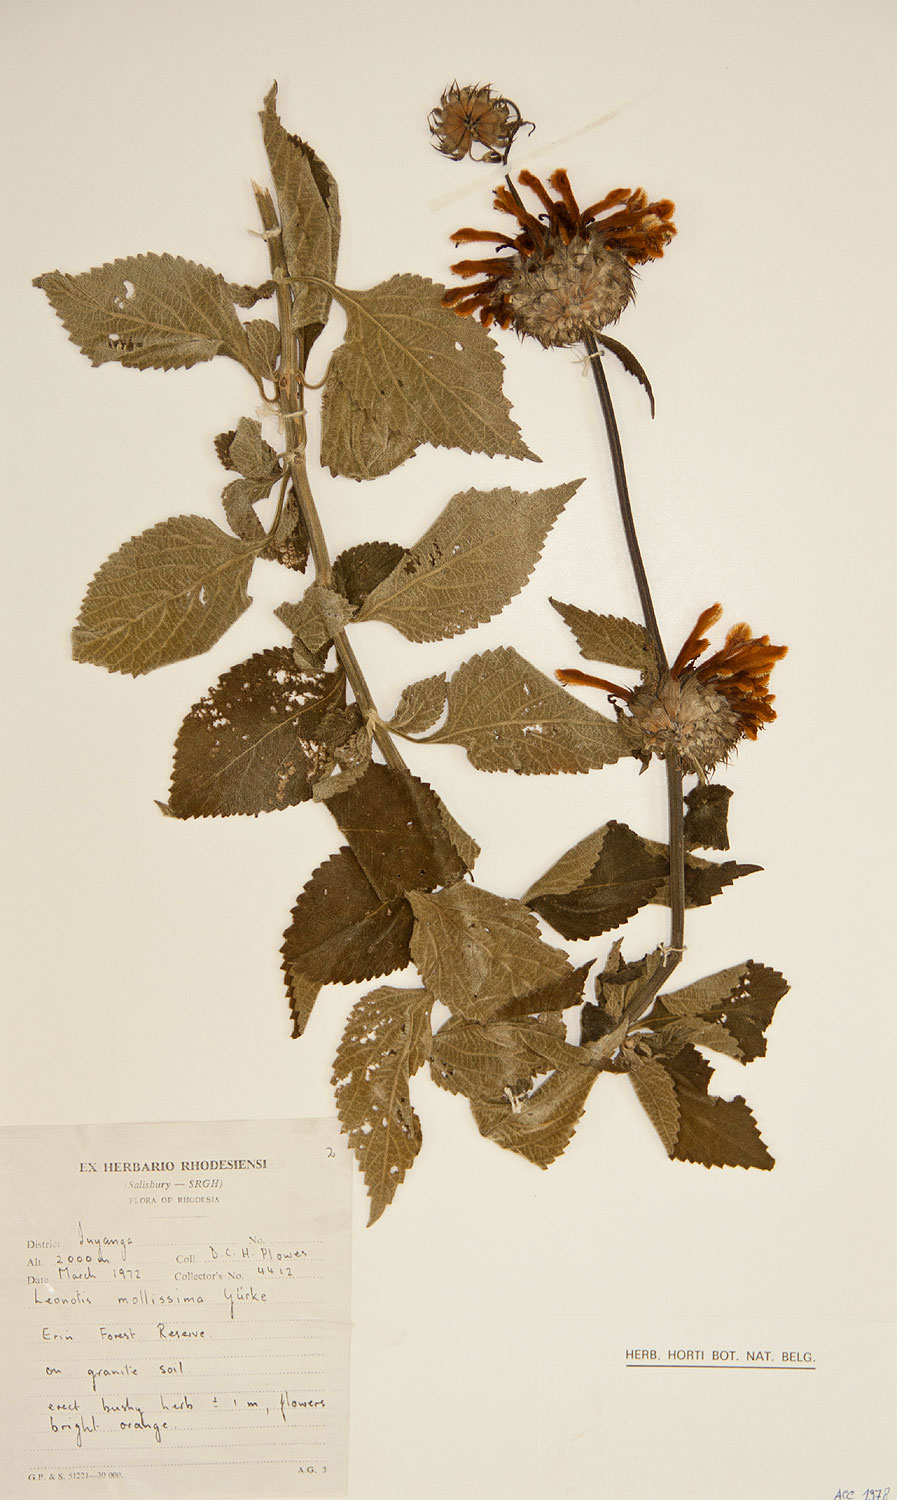 Leonotis ocymifolia var. raineriana